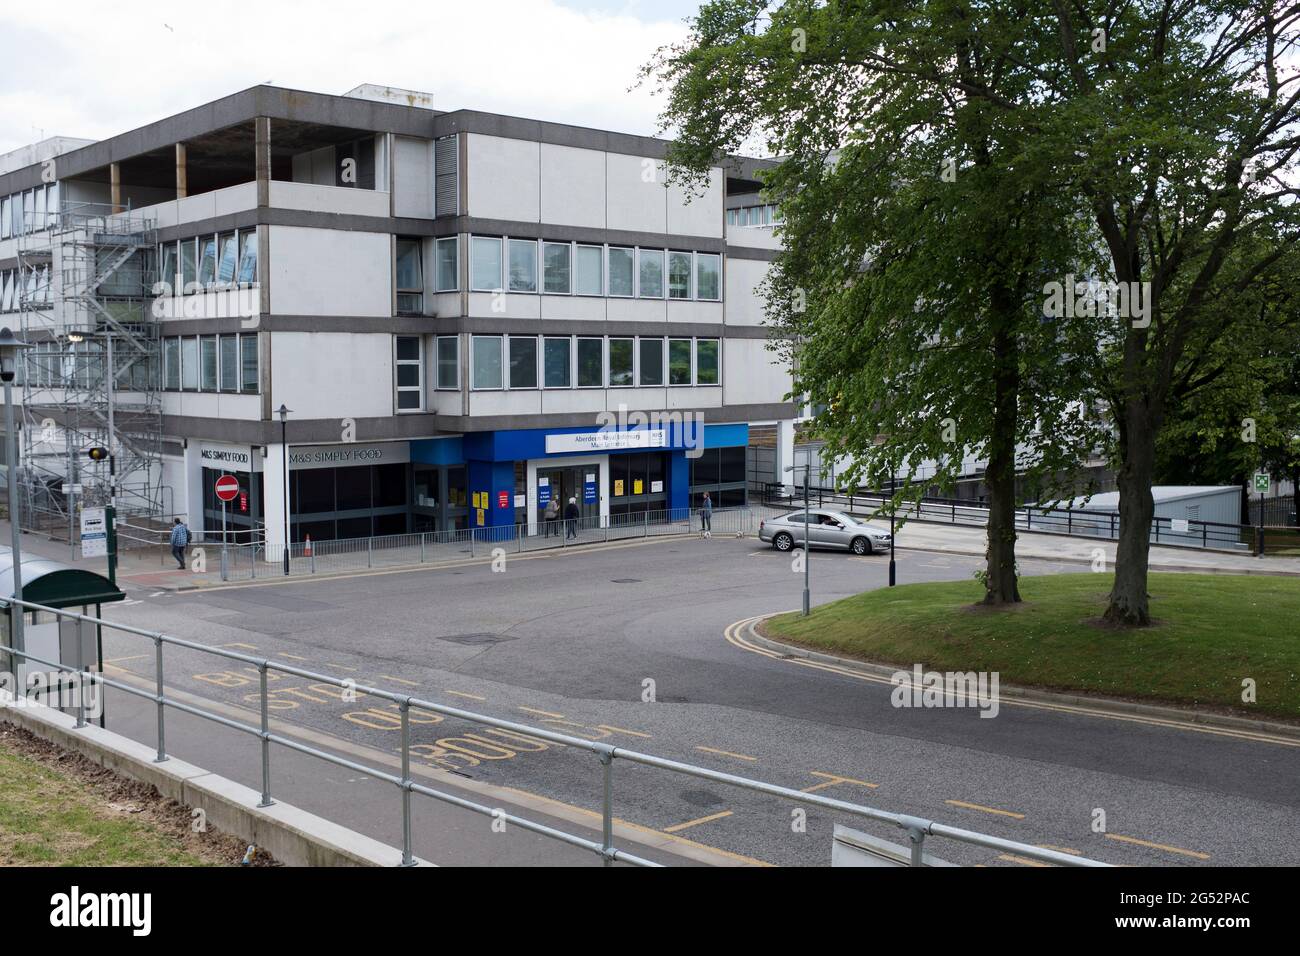 dh Entrada frontal HOSPITAL ARI ABERDEEN Royal enfermería hospitales escoceses edificio exterior Foto de stock